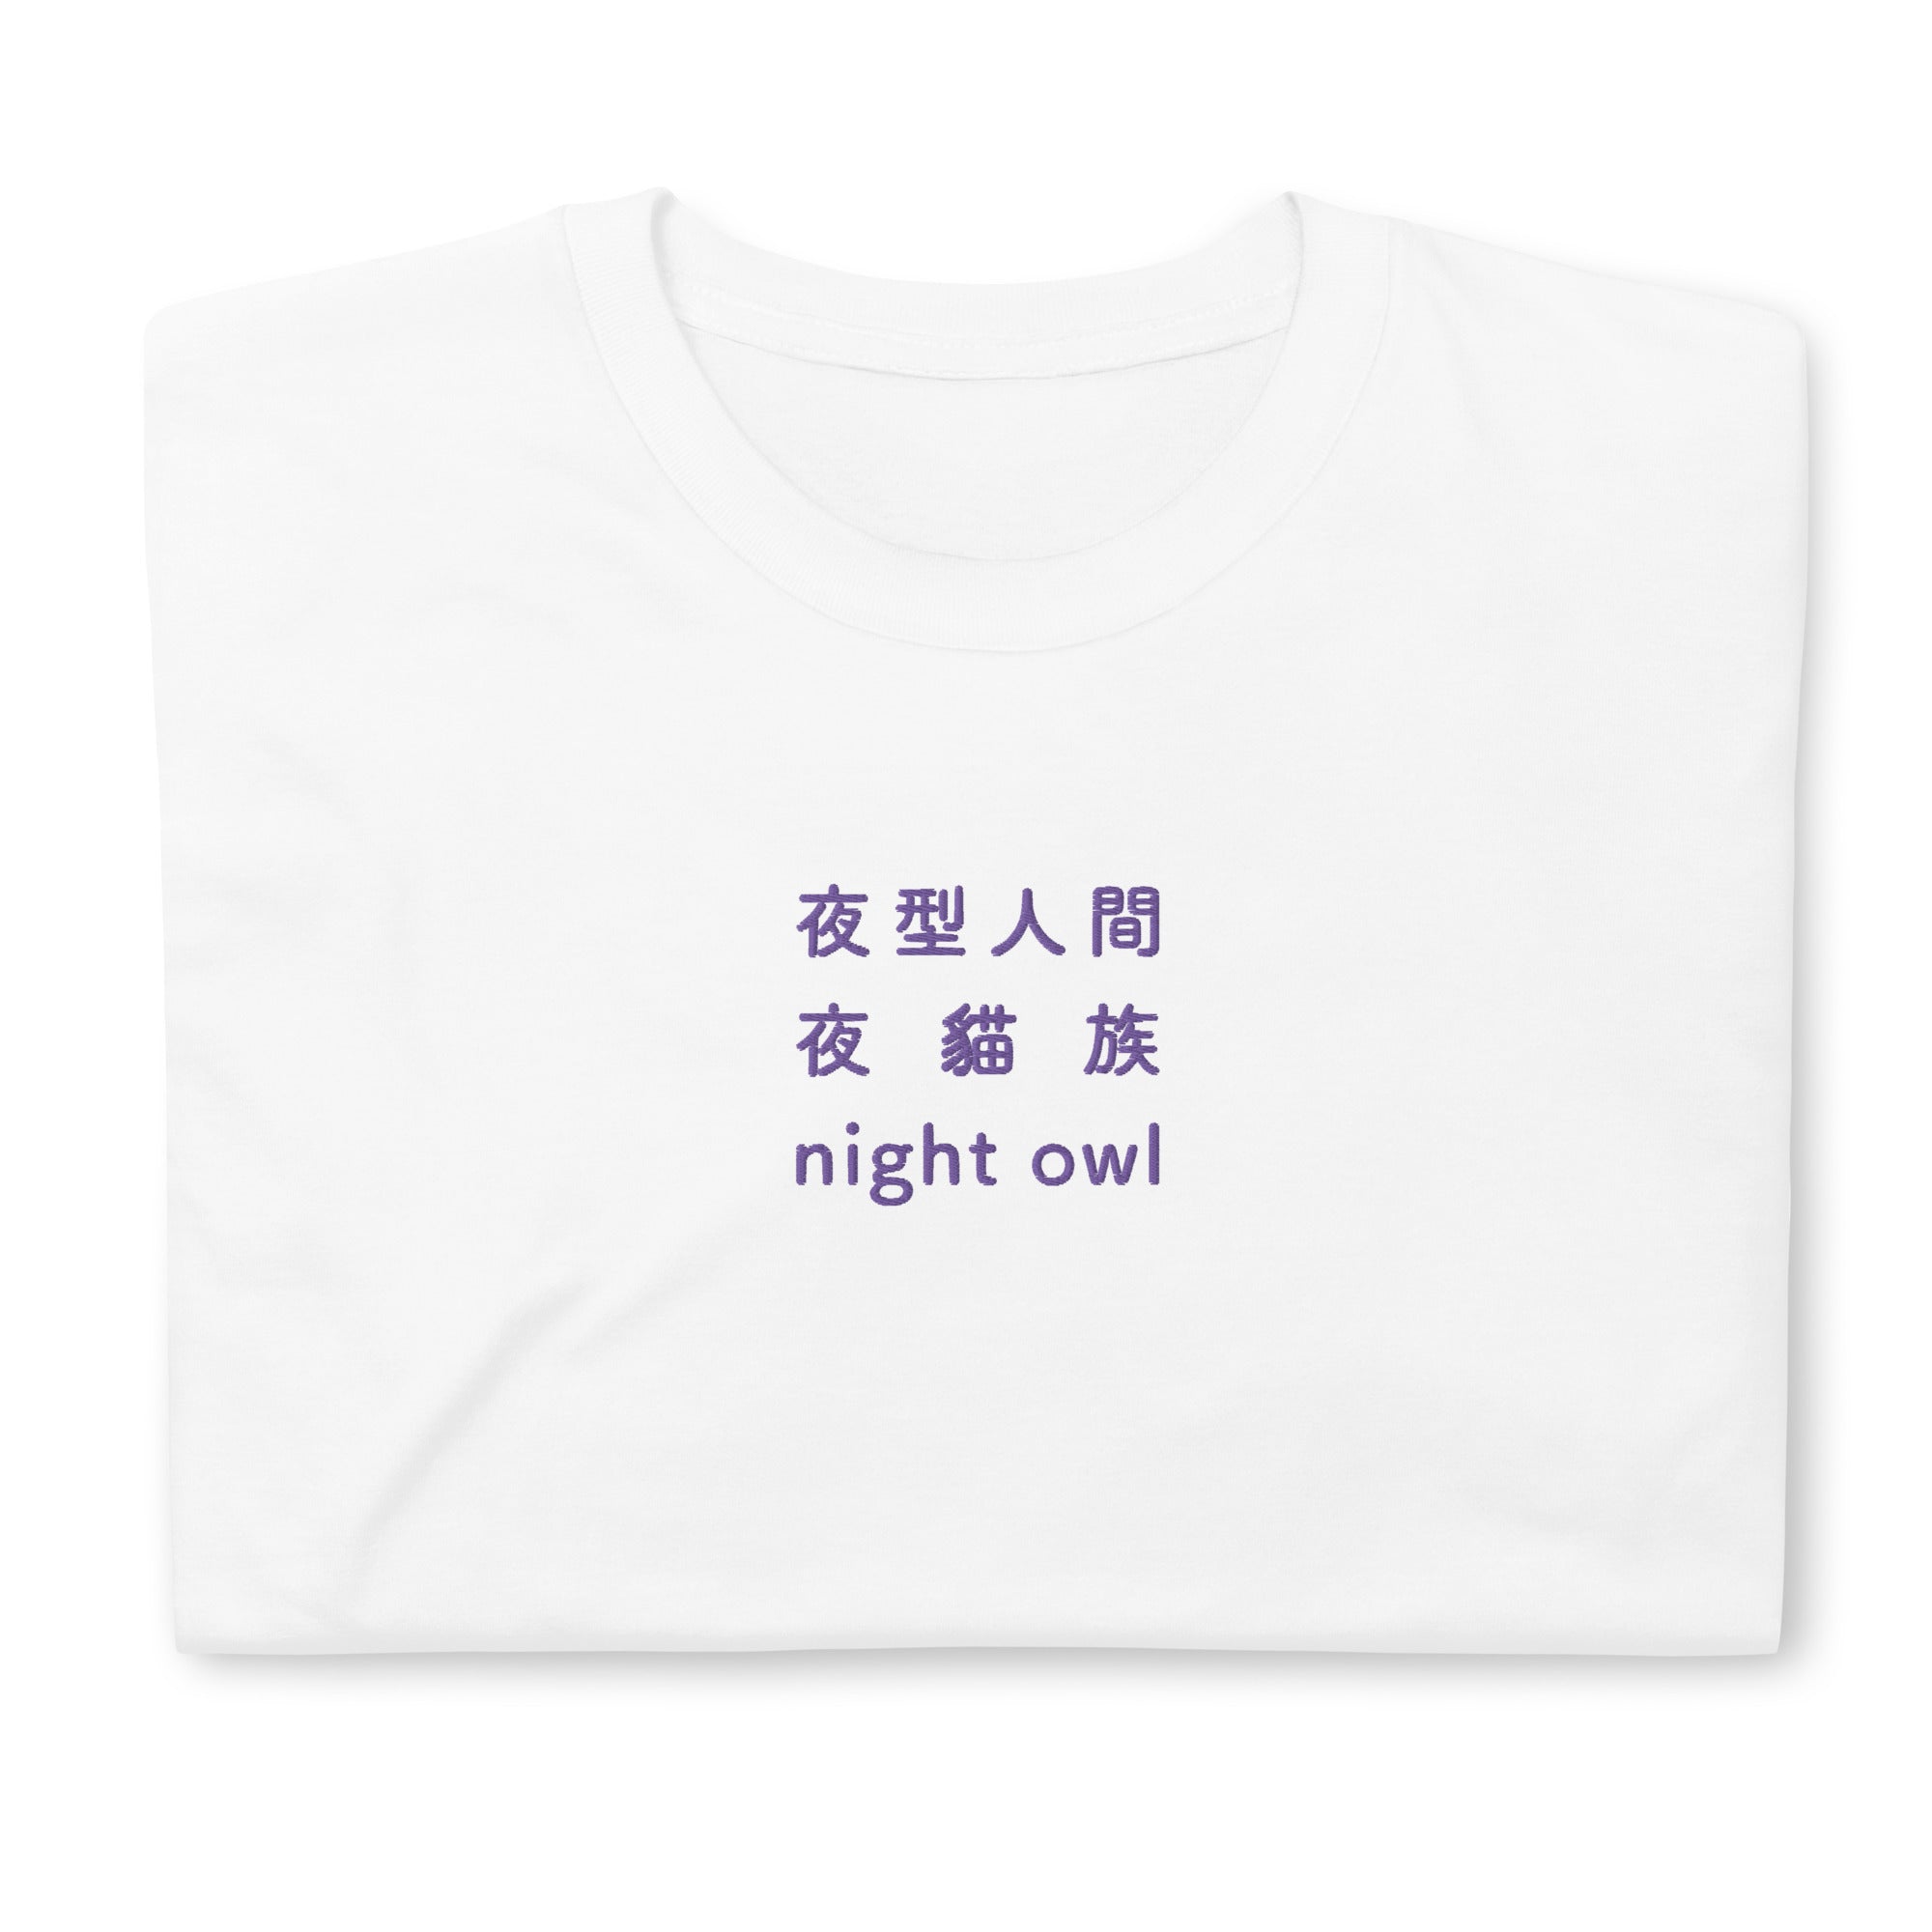 Up Owl Night Women's Sleepshirt - Little Blue House US